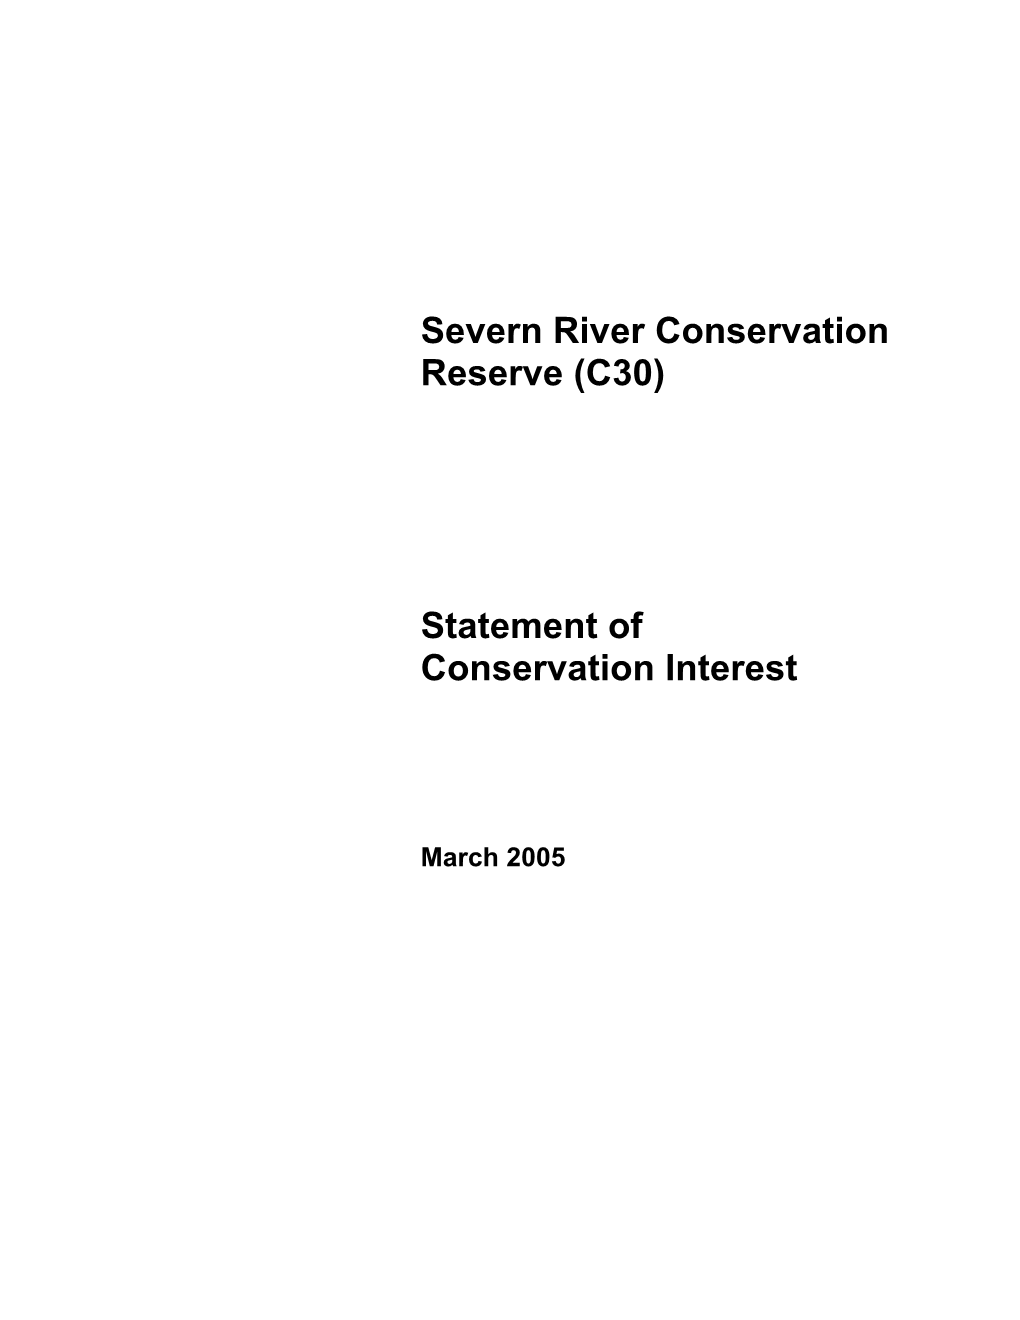 Severn River Conservation Reserve (C30)